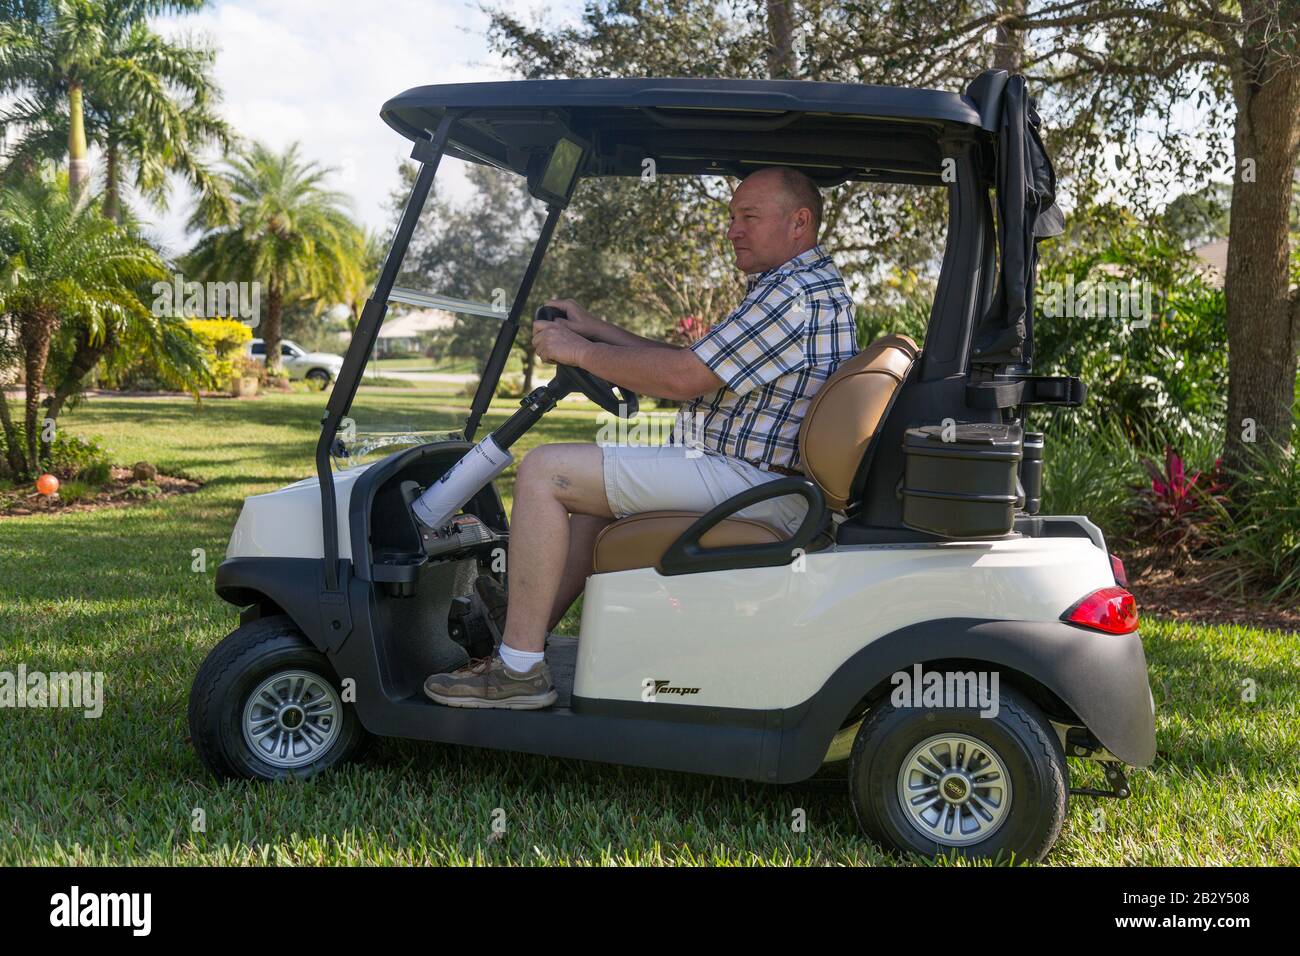 Un hombre que lleva una camisa de cuadros conduce un carrito de golf Club Car Tempo a través de la hierba de una casa de Palm City, Florida. Foto de stock